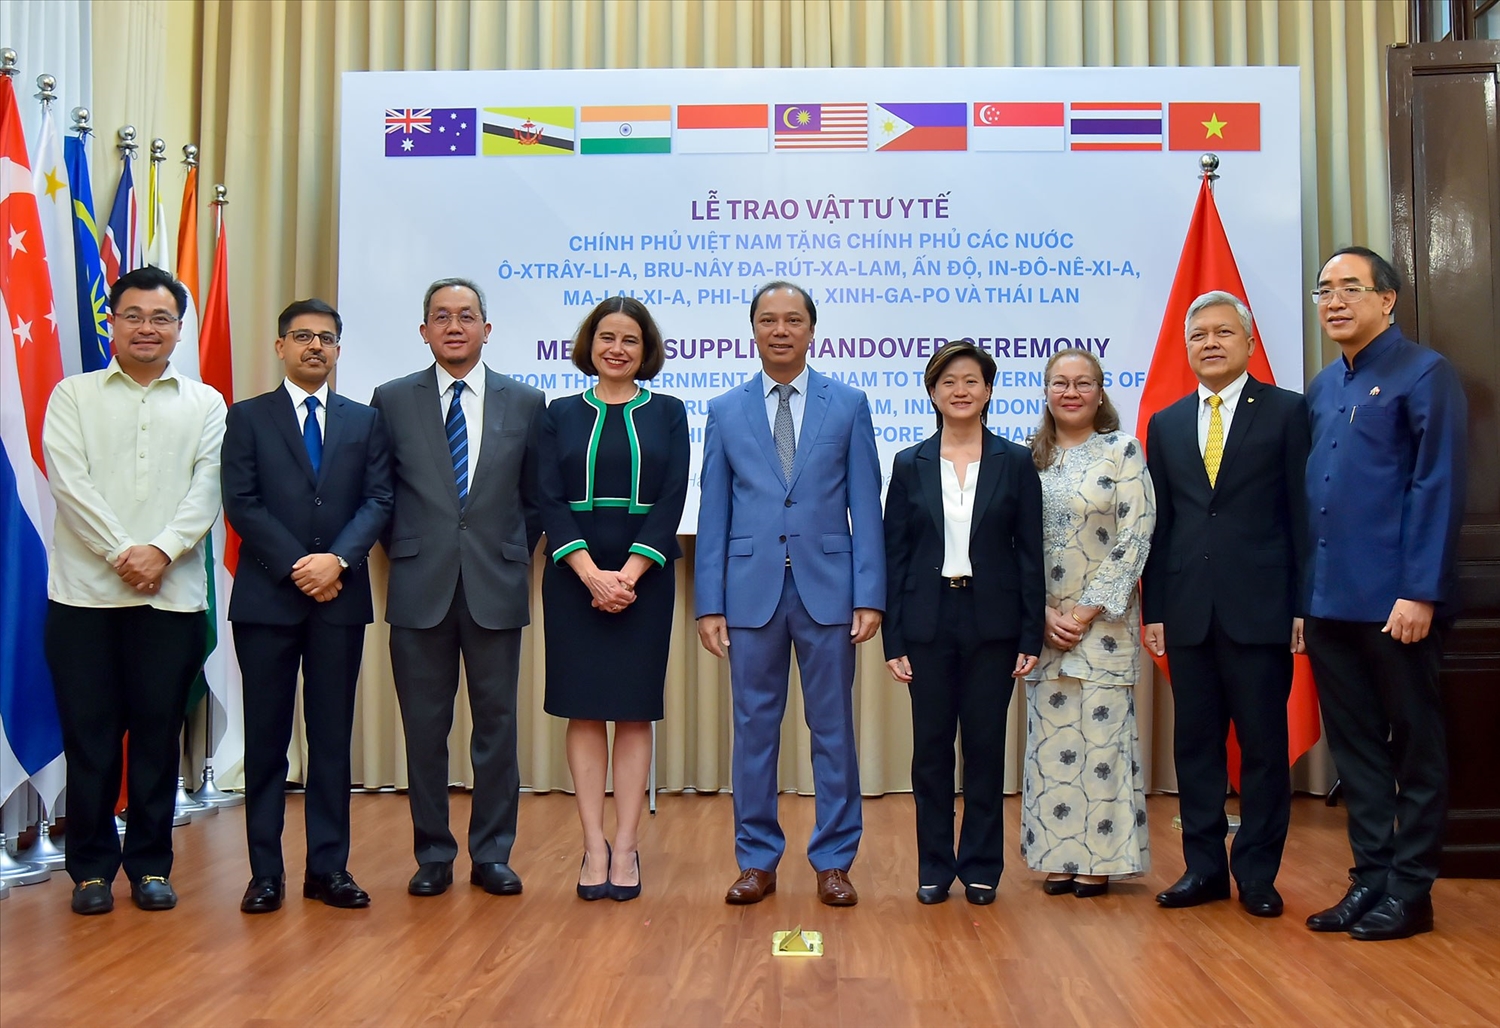 Thứ trưởng Bộ Ngoại giao Nguyễn Quốc Dũng (đứng giữa)và các đại sứ, đại diện các nước nhận hỗ trợ phòng chống Covid-19 